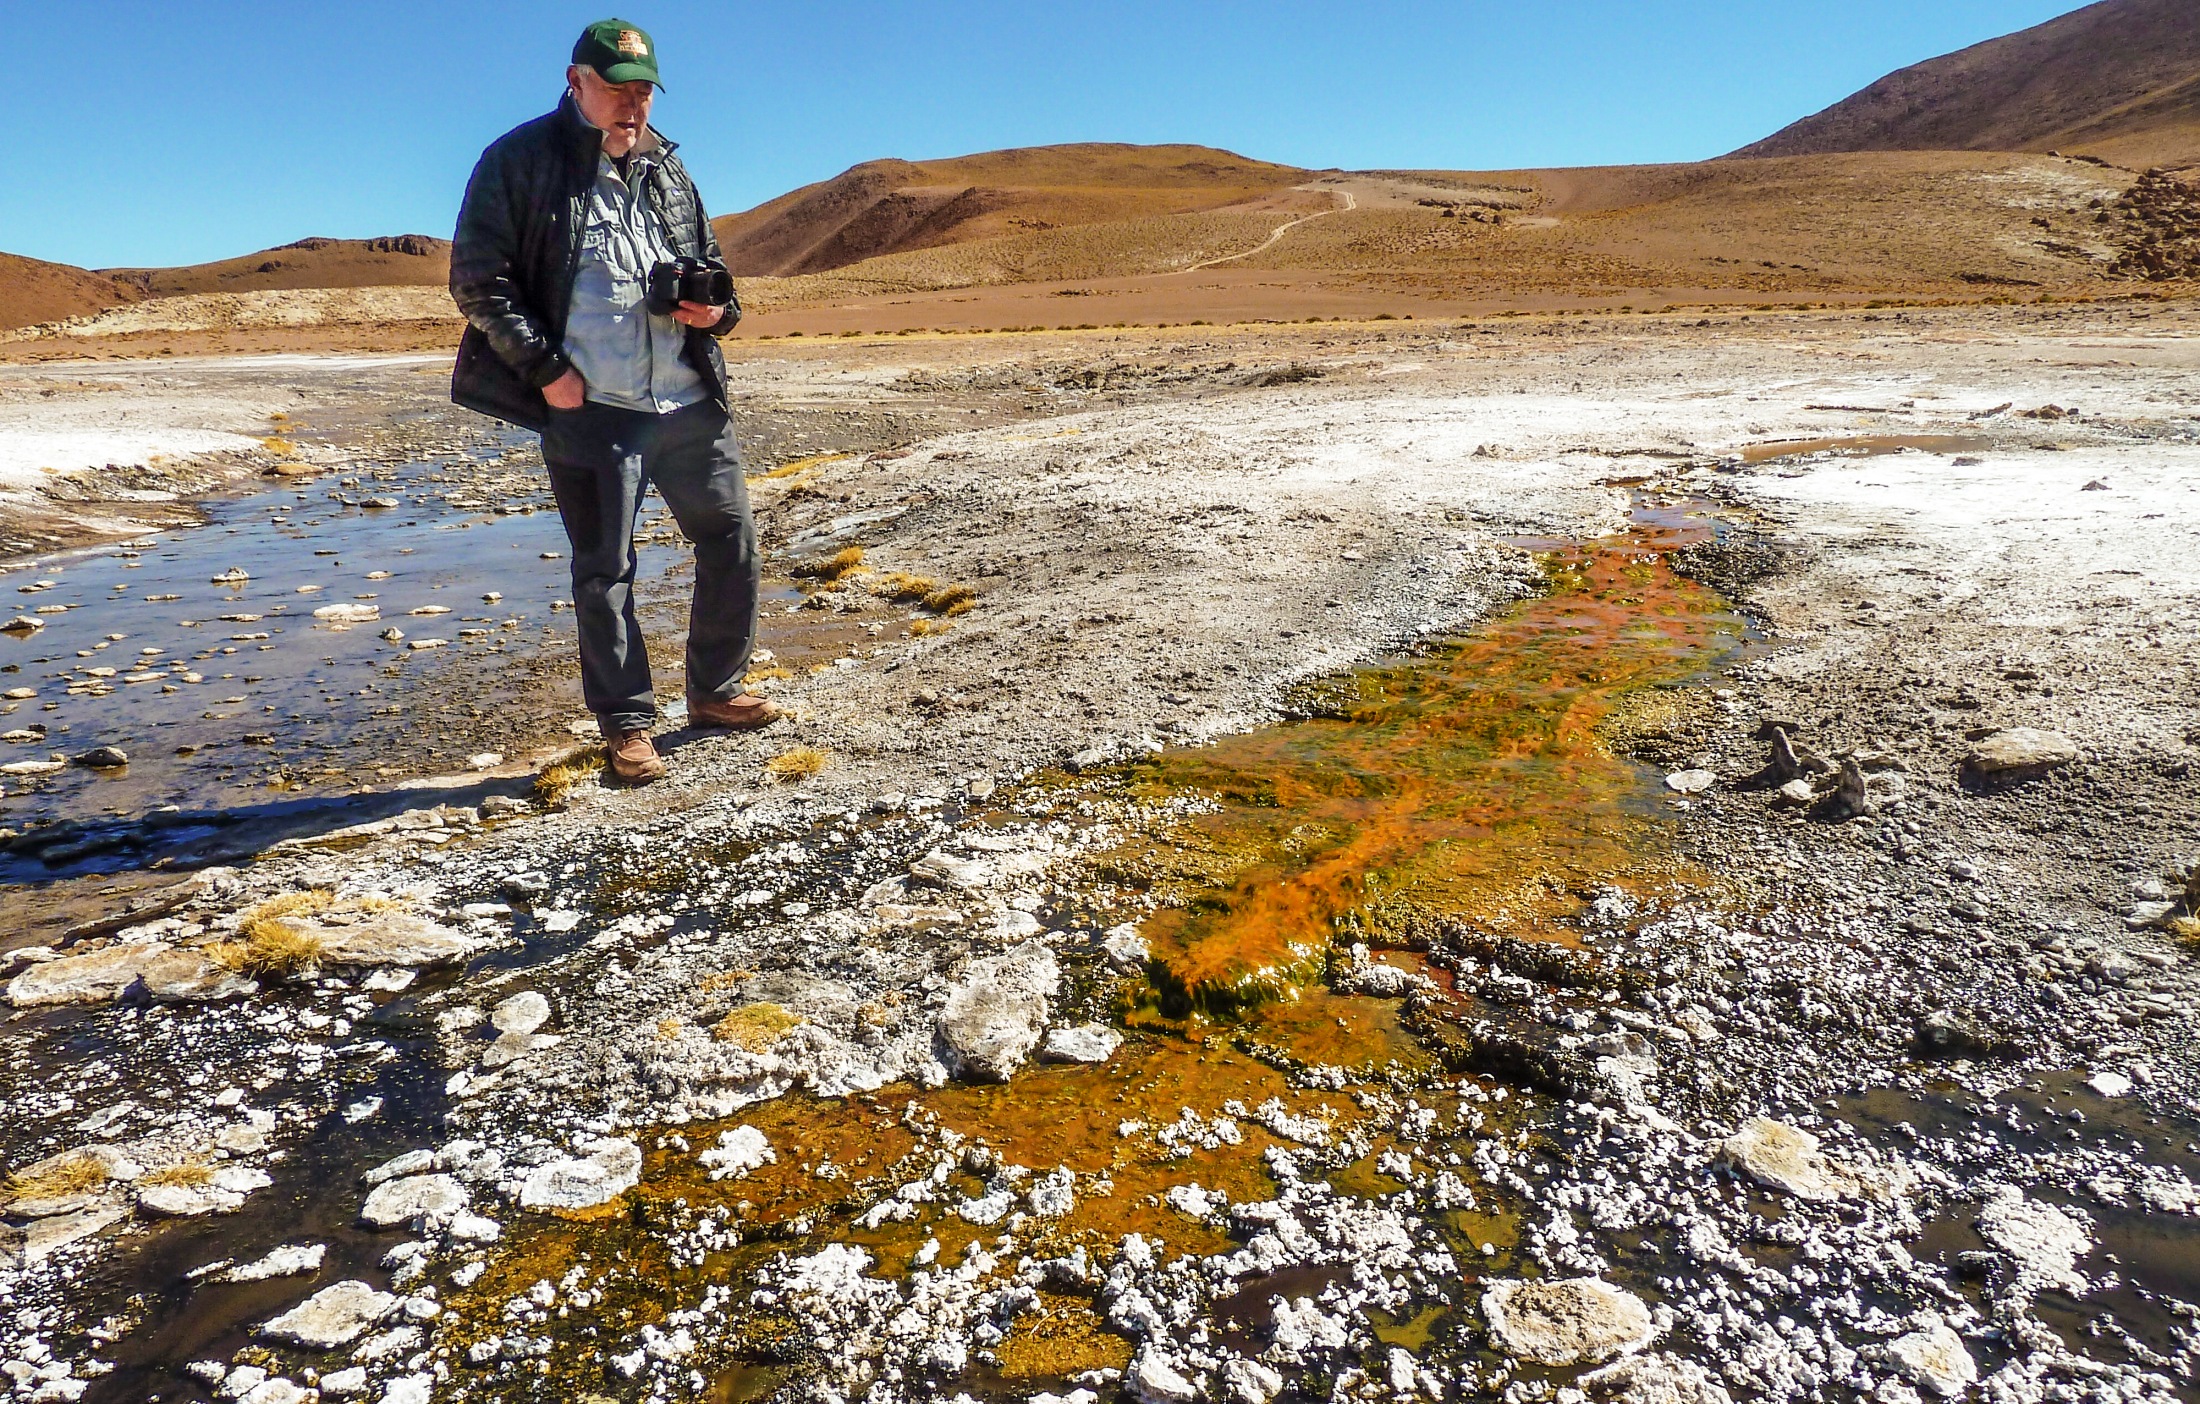 L'exobiologiste Jack Farmer inspecte un écoulement issu d'une des sources chaudes d'El Tatio au Chili. Il est coloré par la présence de micro-organismes. L'air est particulièrement sec et la température descend en dessous de zéro chaque nuit en ce lieu en altitude dans la Cordillère des Andes. Le rayonnement ultraviolet y est aussi plus intense, ce qui fait de ce lieu du désert de l'Atacama l'environnement le plus proche sur Terre de ce qu'ont dû être certaines sources chaudes martiennes. © Steve Ruff